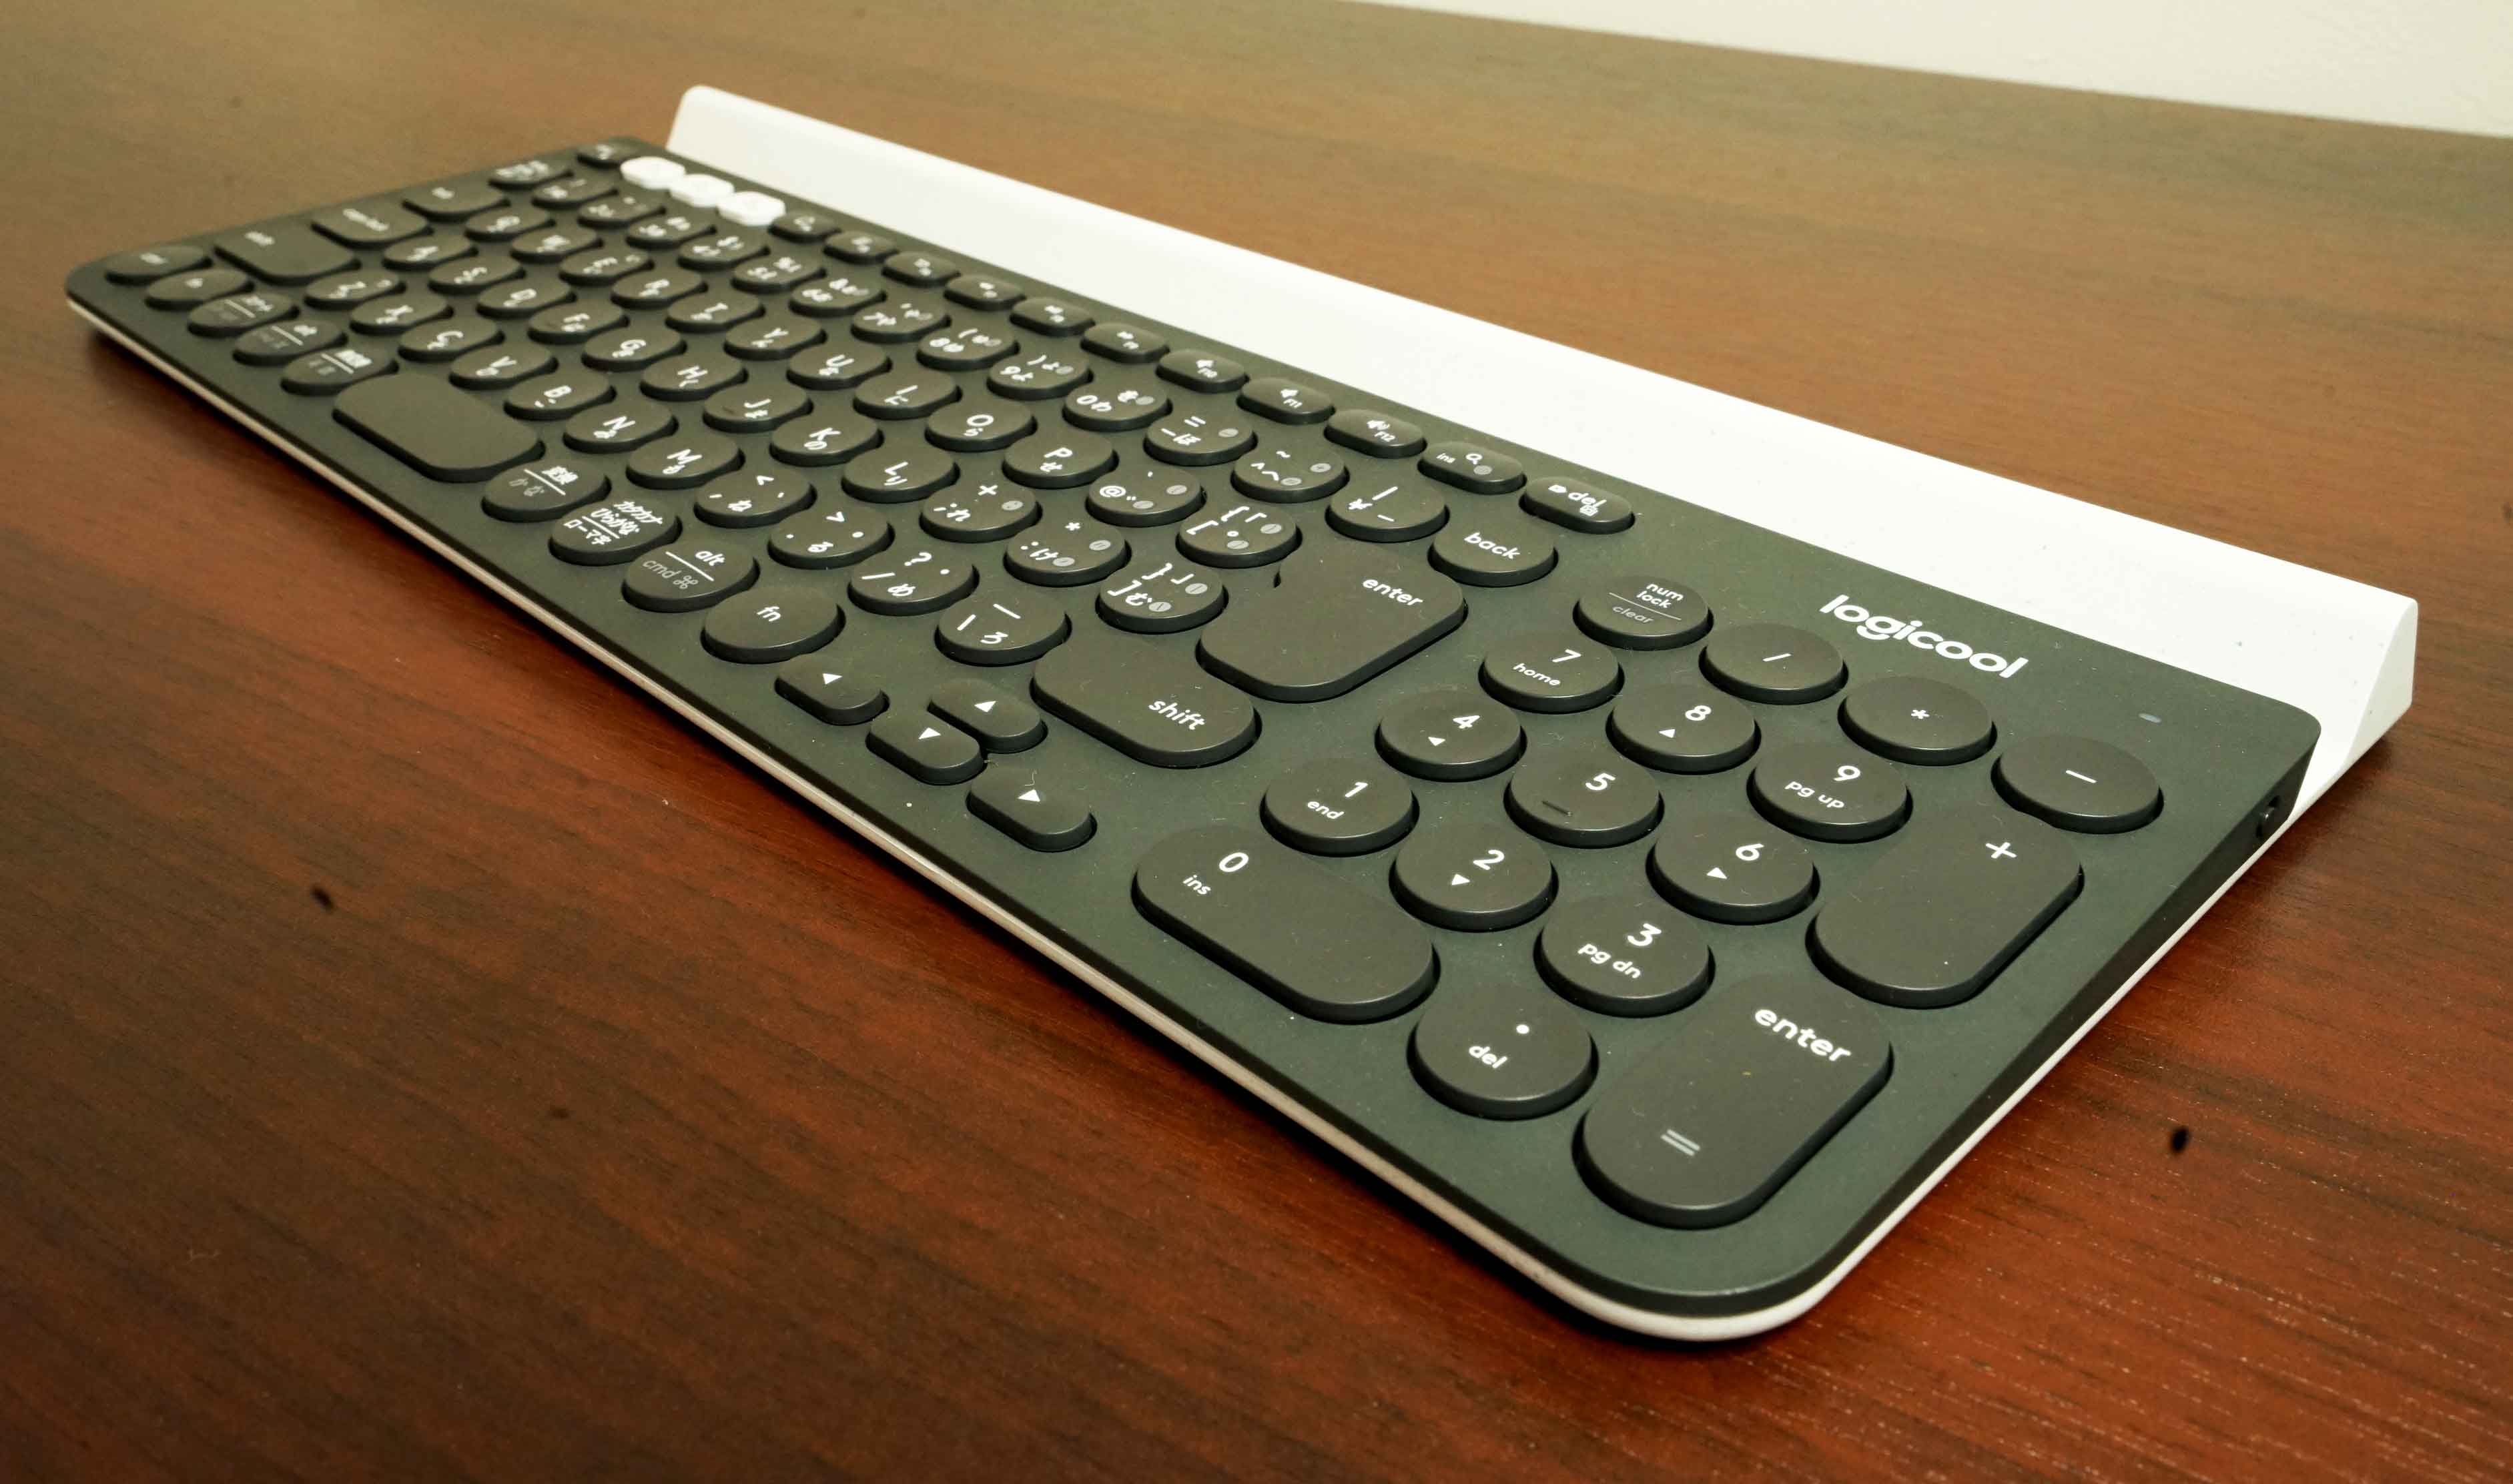 Logicool ワイヤレスキーボード K780